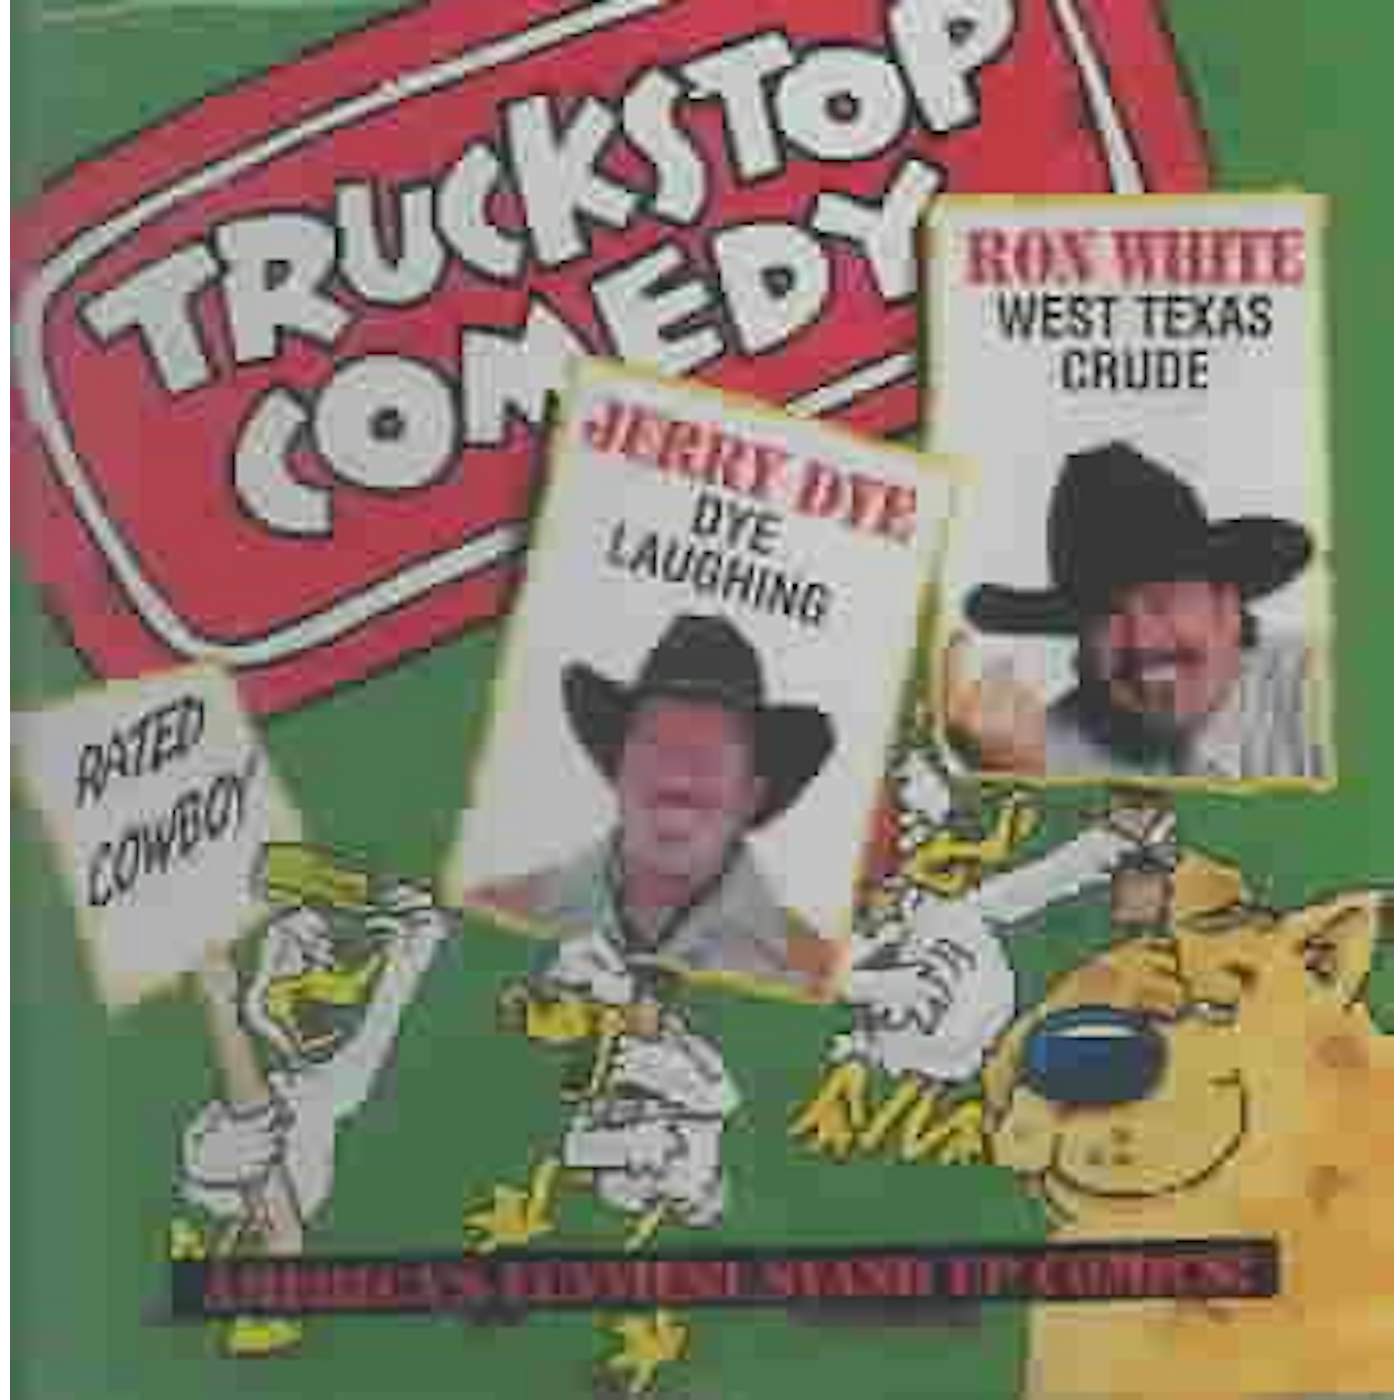 Ron White Truckstop Comedy CD